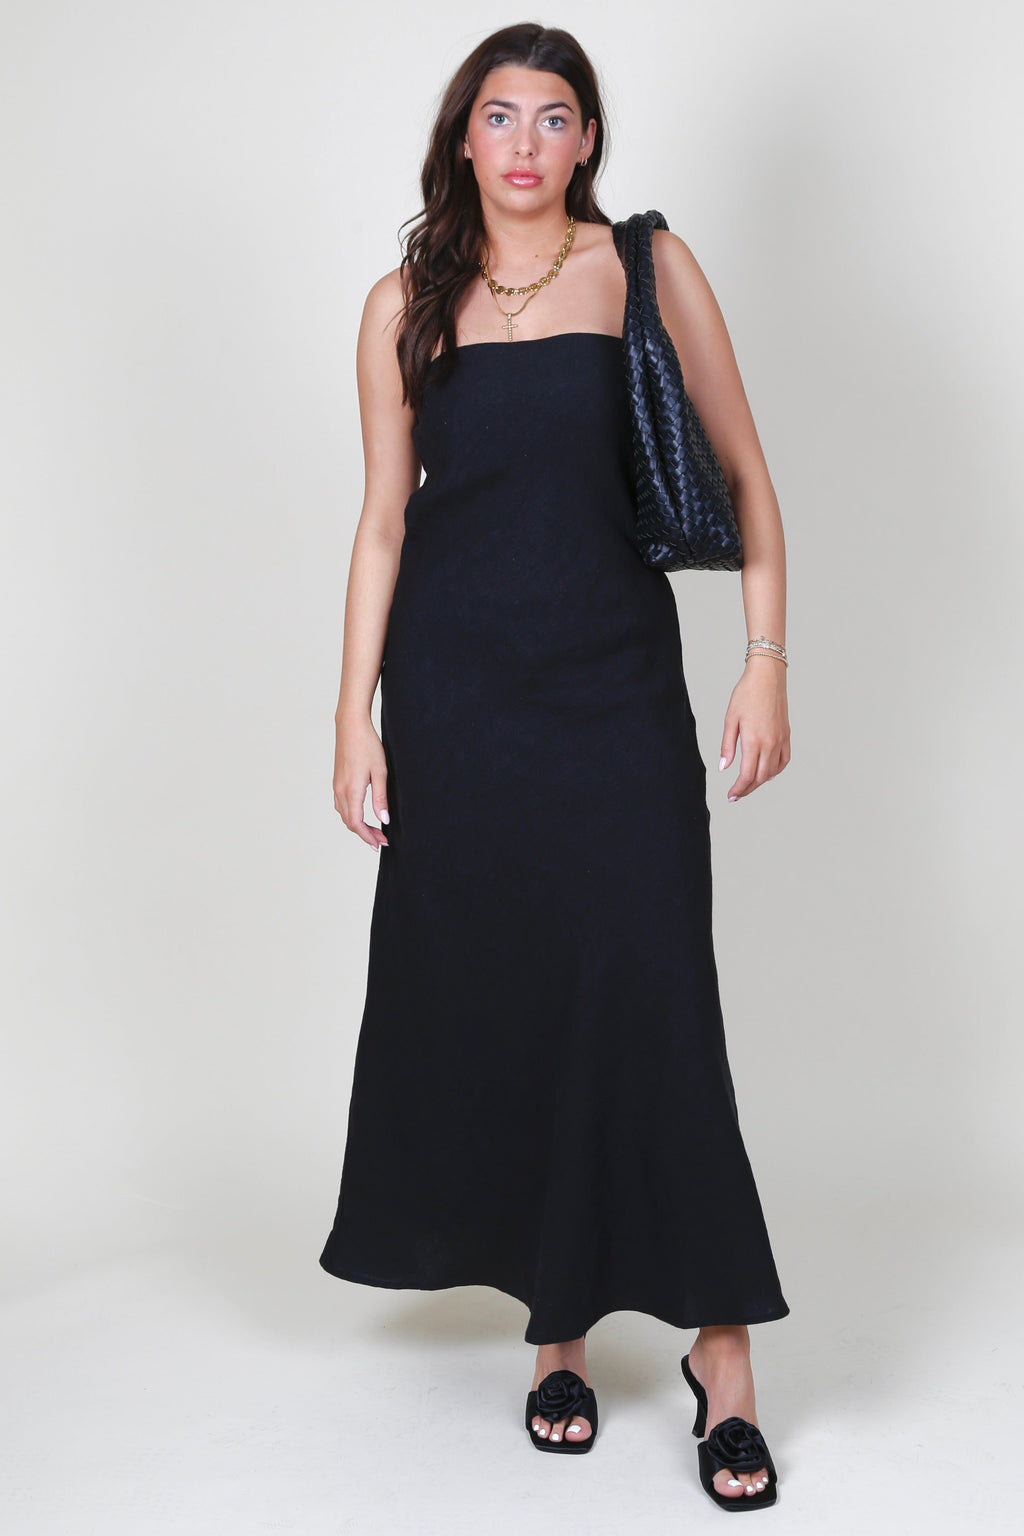 Long Strapless Linen Dress - Black